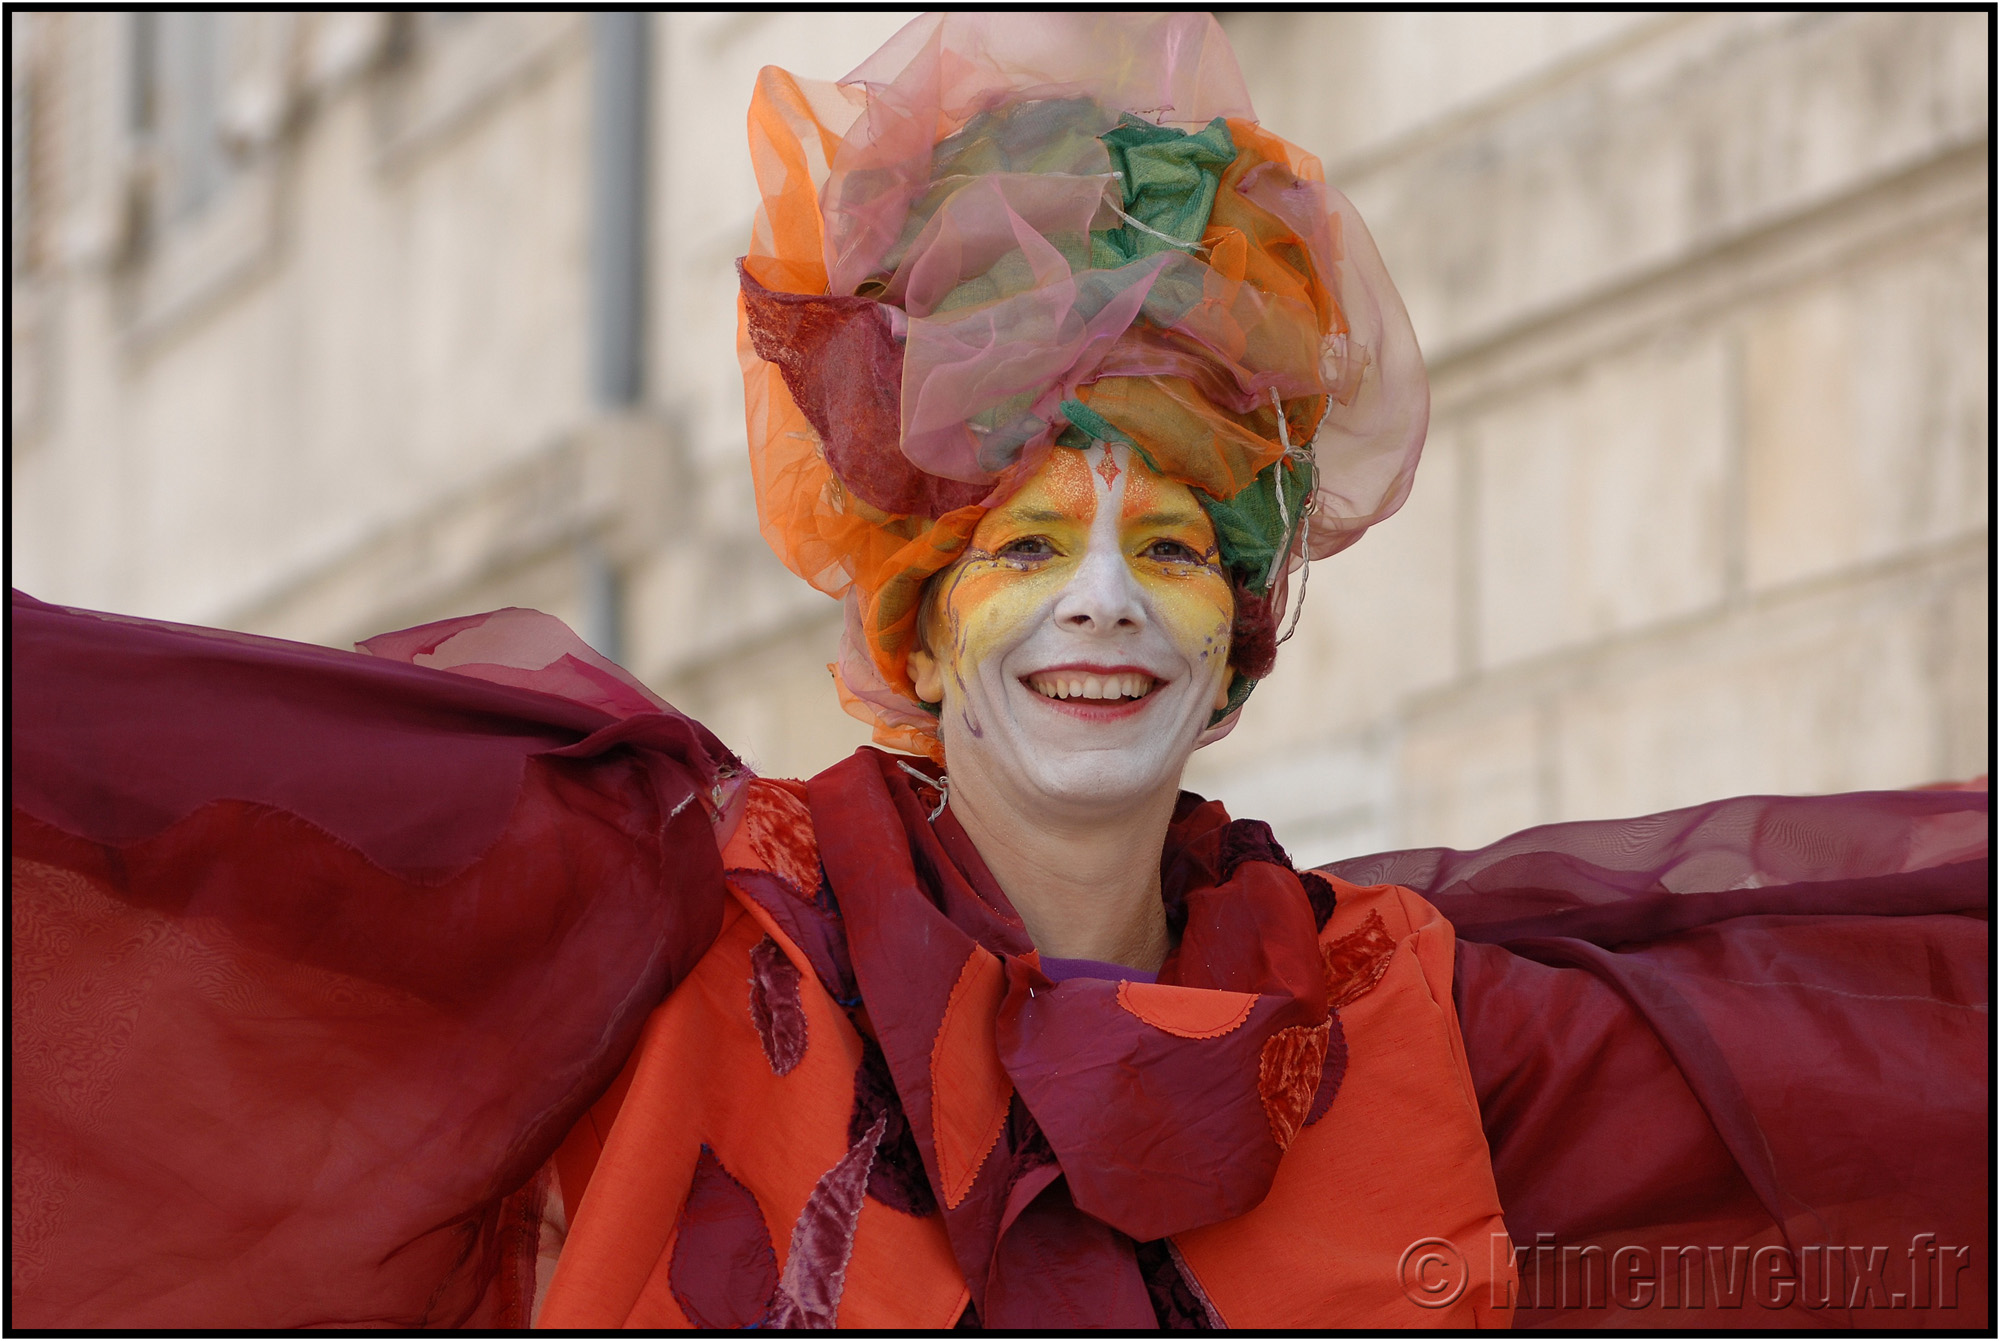 kinenveux_68_carnaval2015lr.jpg - Carnaval des Enfants 2015 - La Rochelle